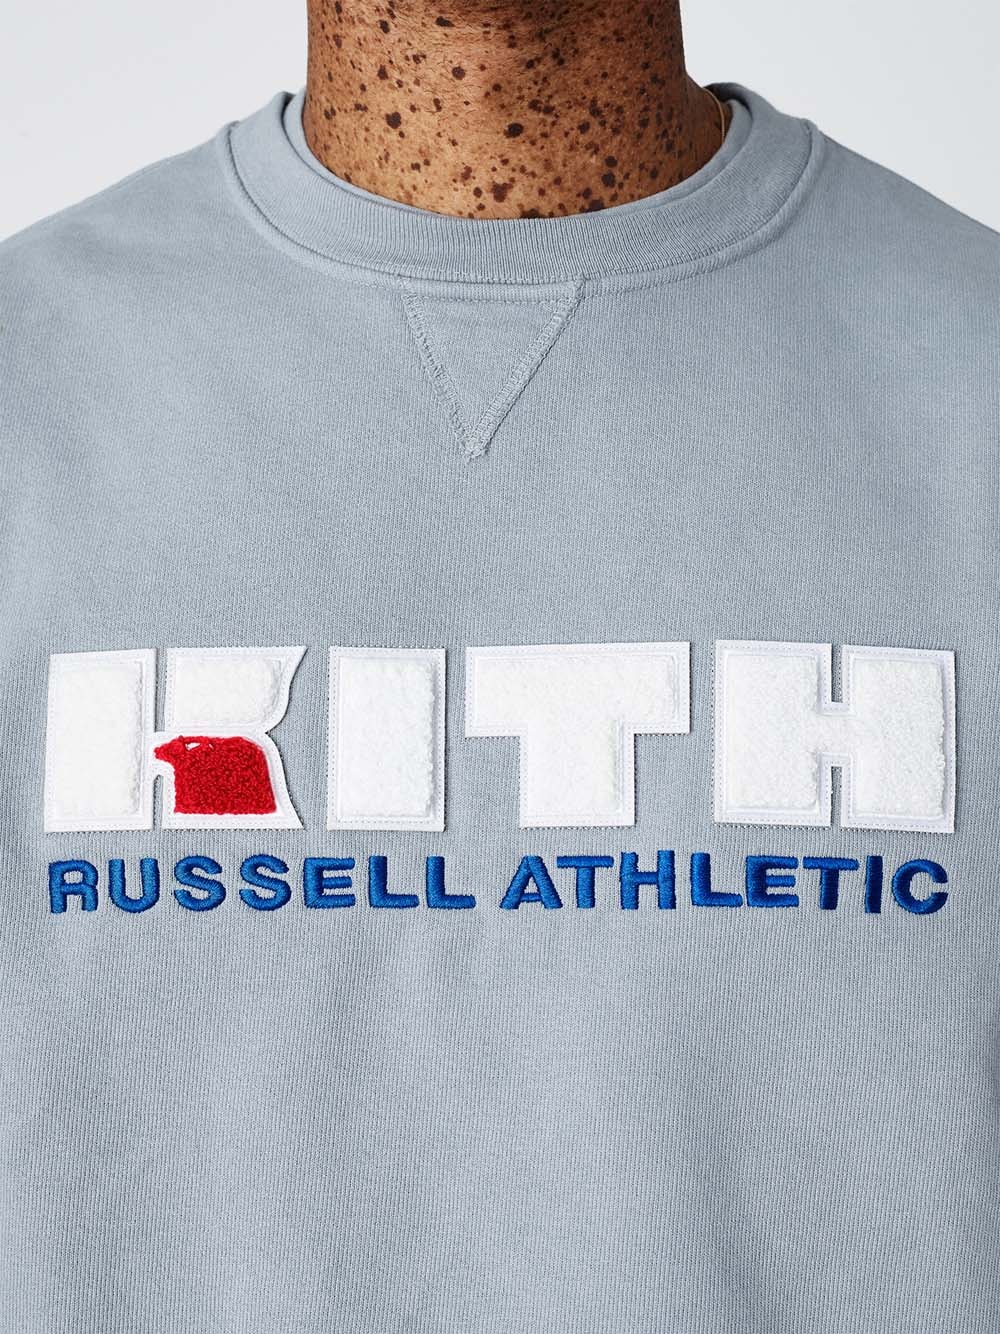 무려 24가지 색상으로 출시되는 KITH 키스 러셀 애슬레틱 컬렉션 로니 피그 2019년